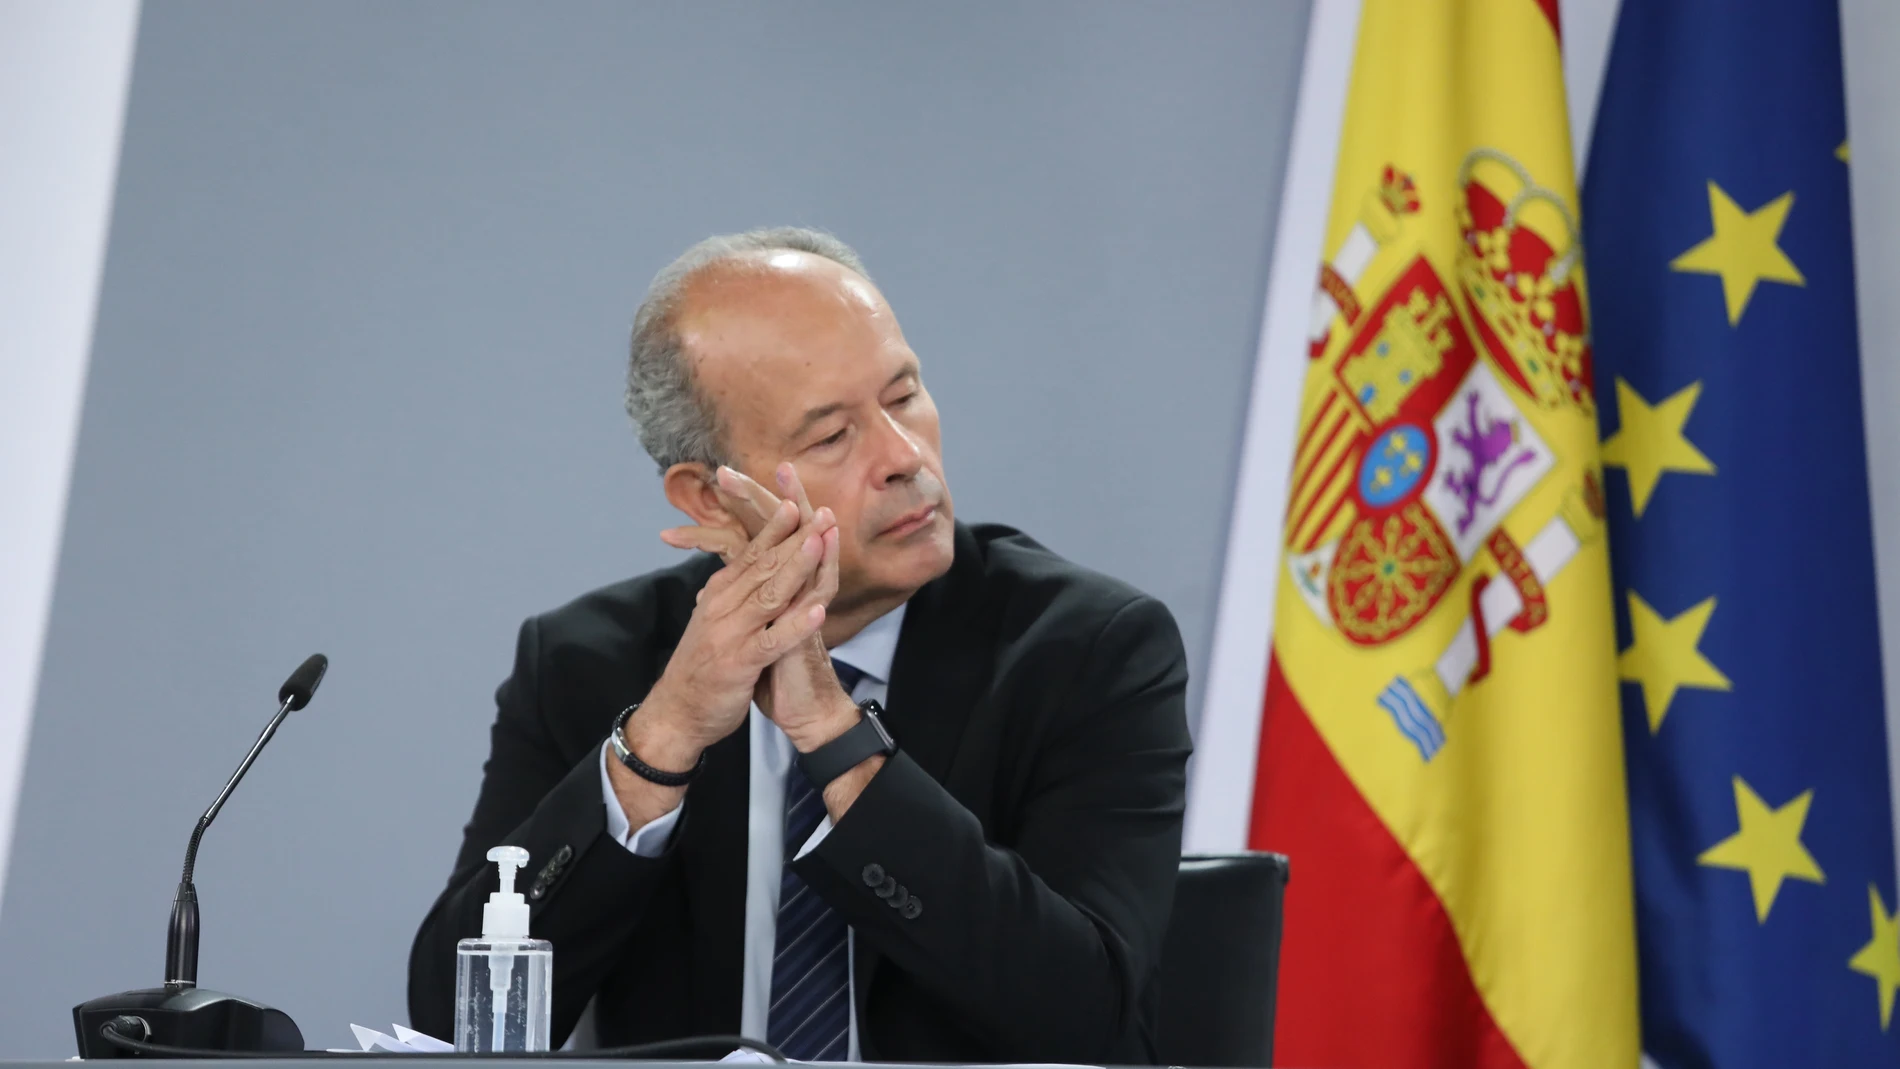 Rueda de prensa posterior al consejo de ministros con el ministro de justicia Juan Carlos Campo